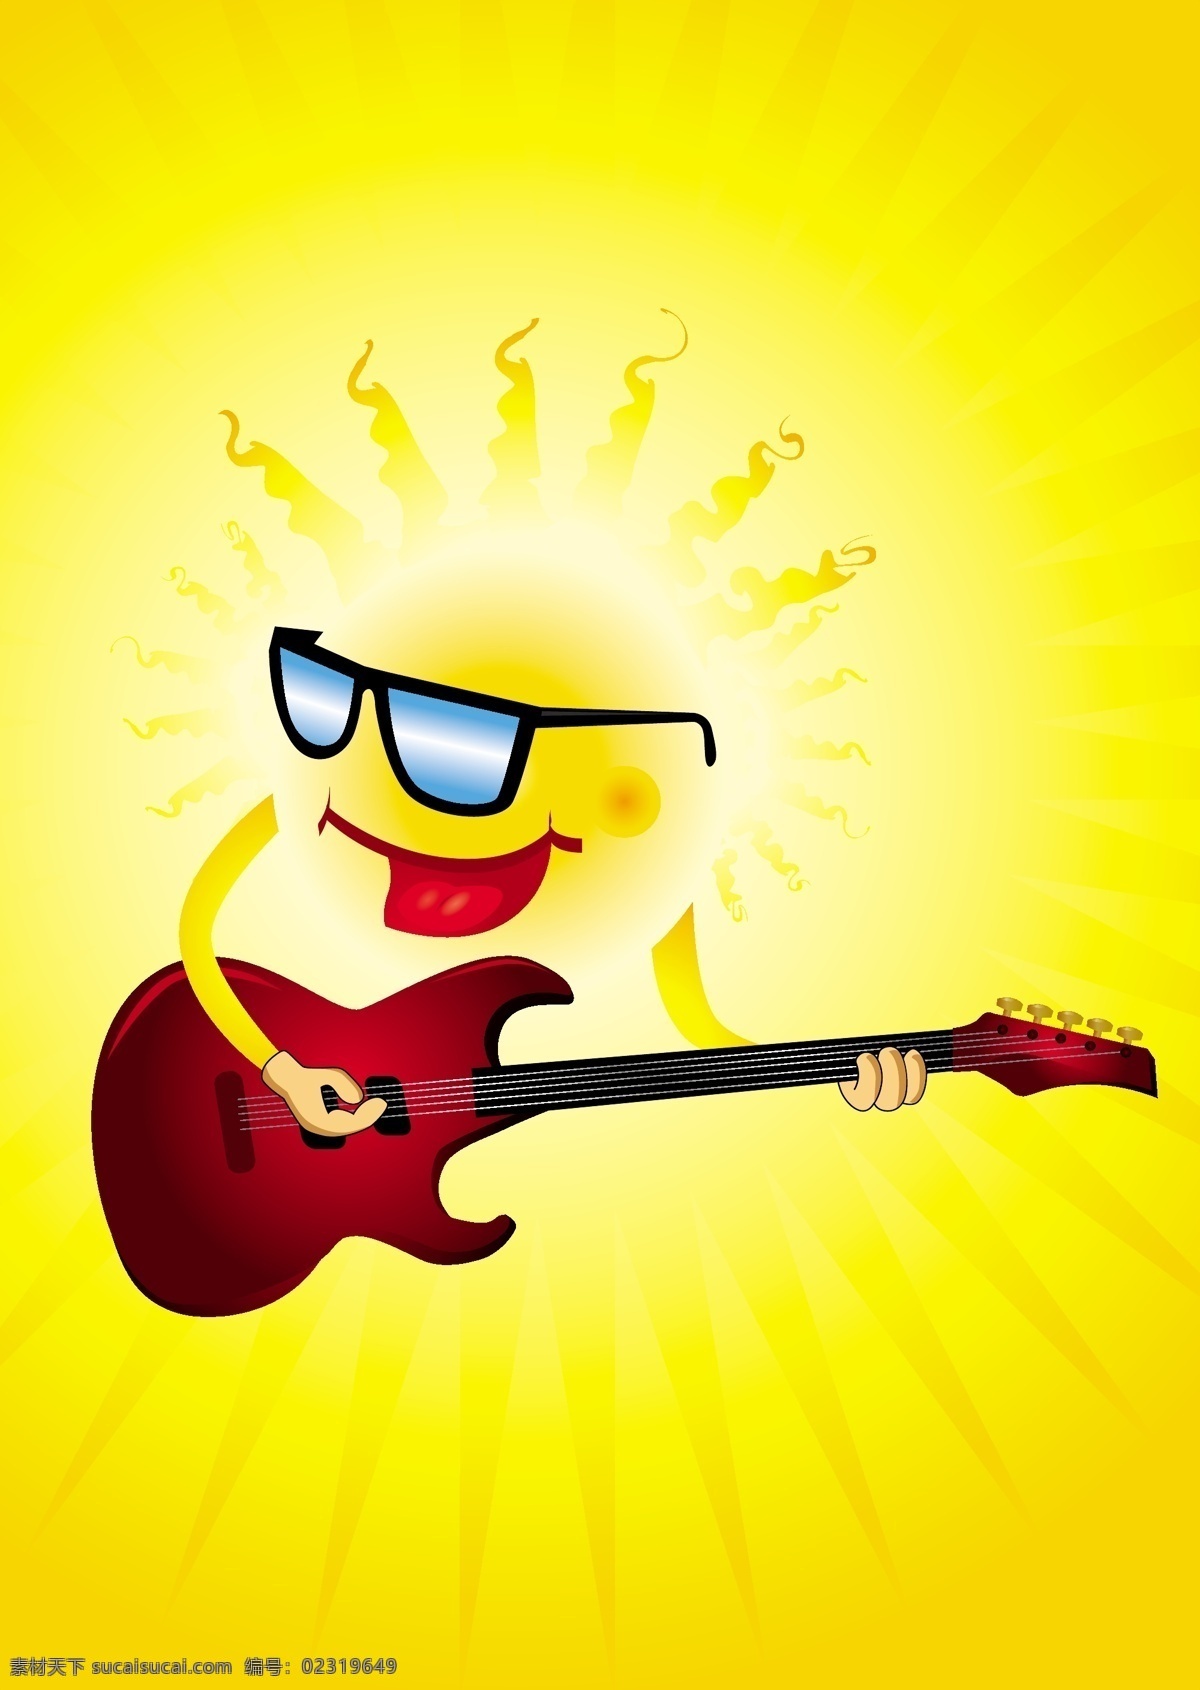 矢量 音乐 吉他 卡通 太阳 背景 放射线 光芒 光线 矢量素材